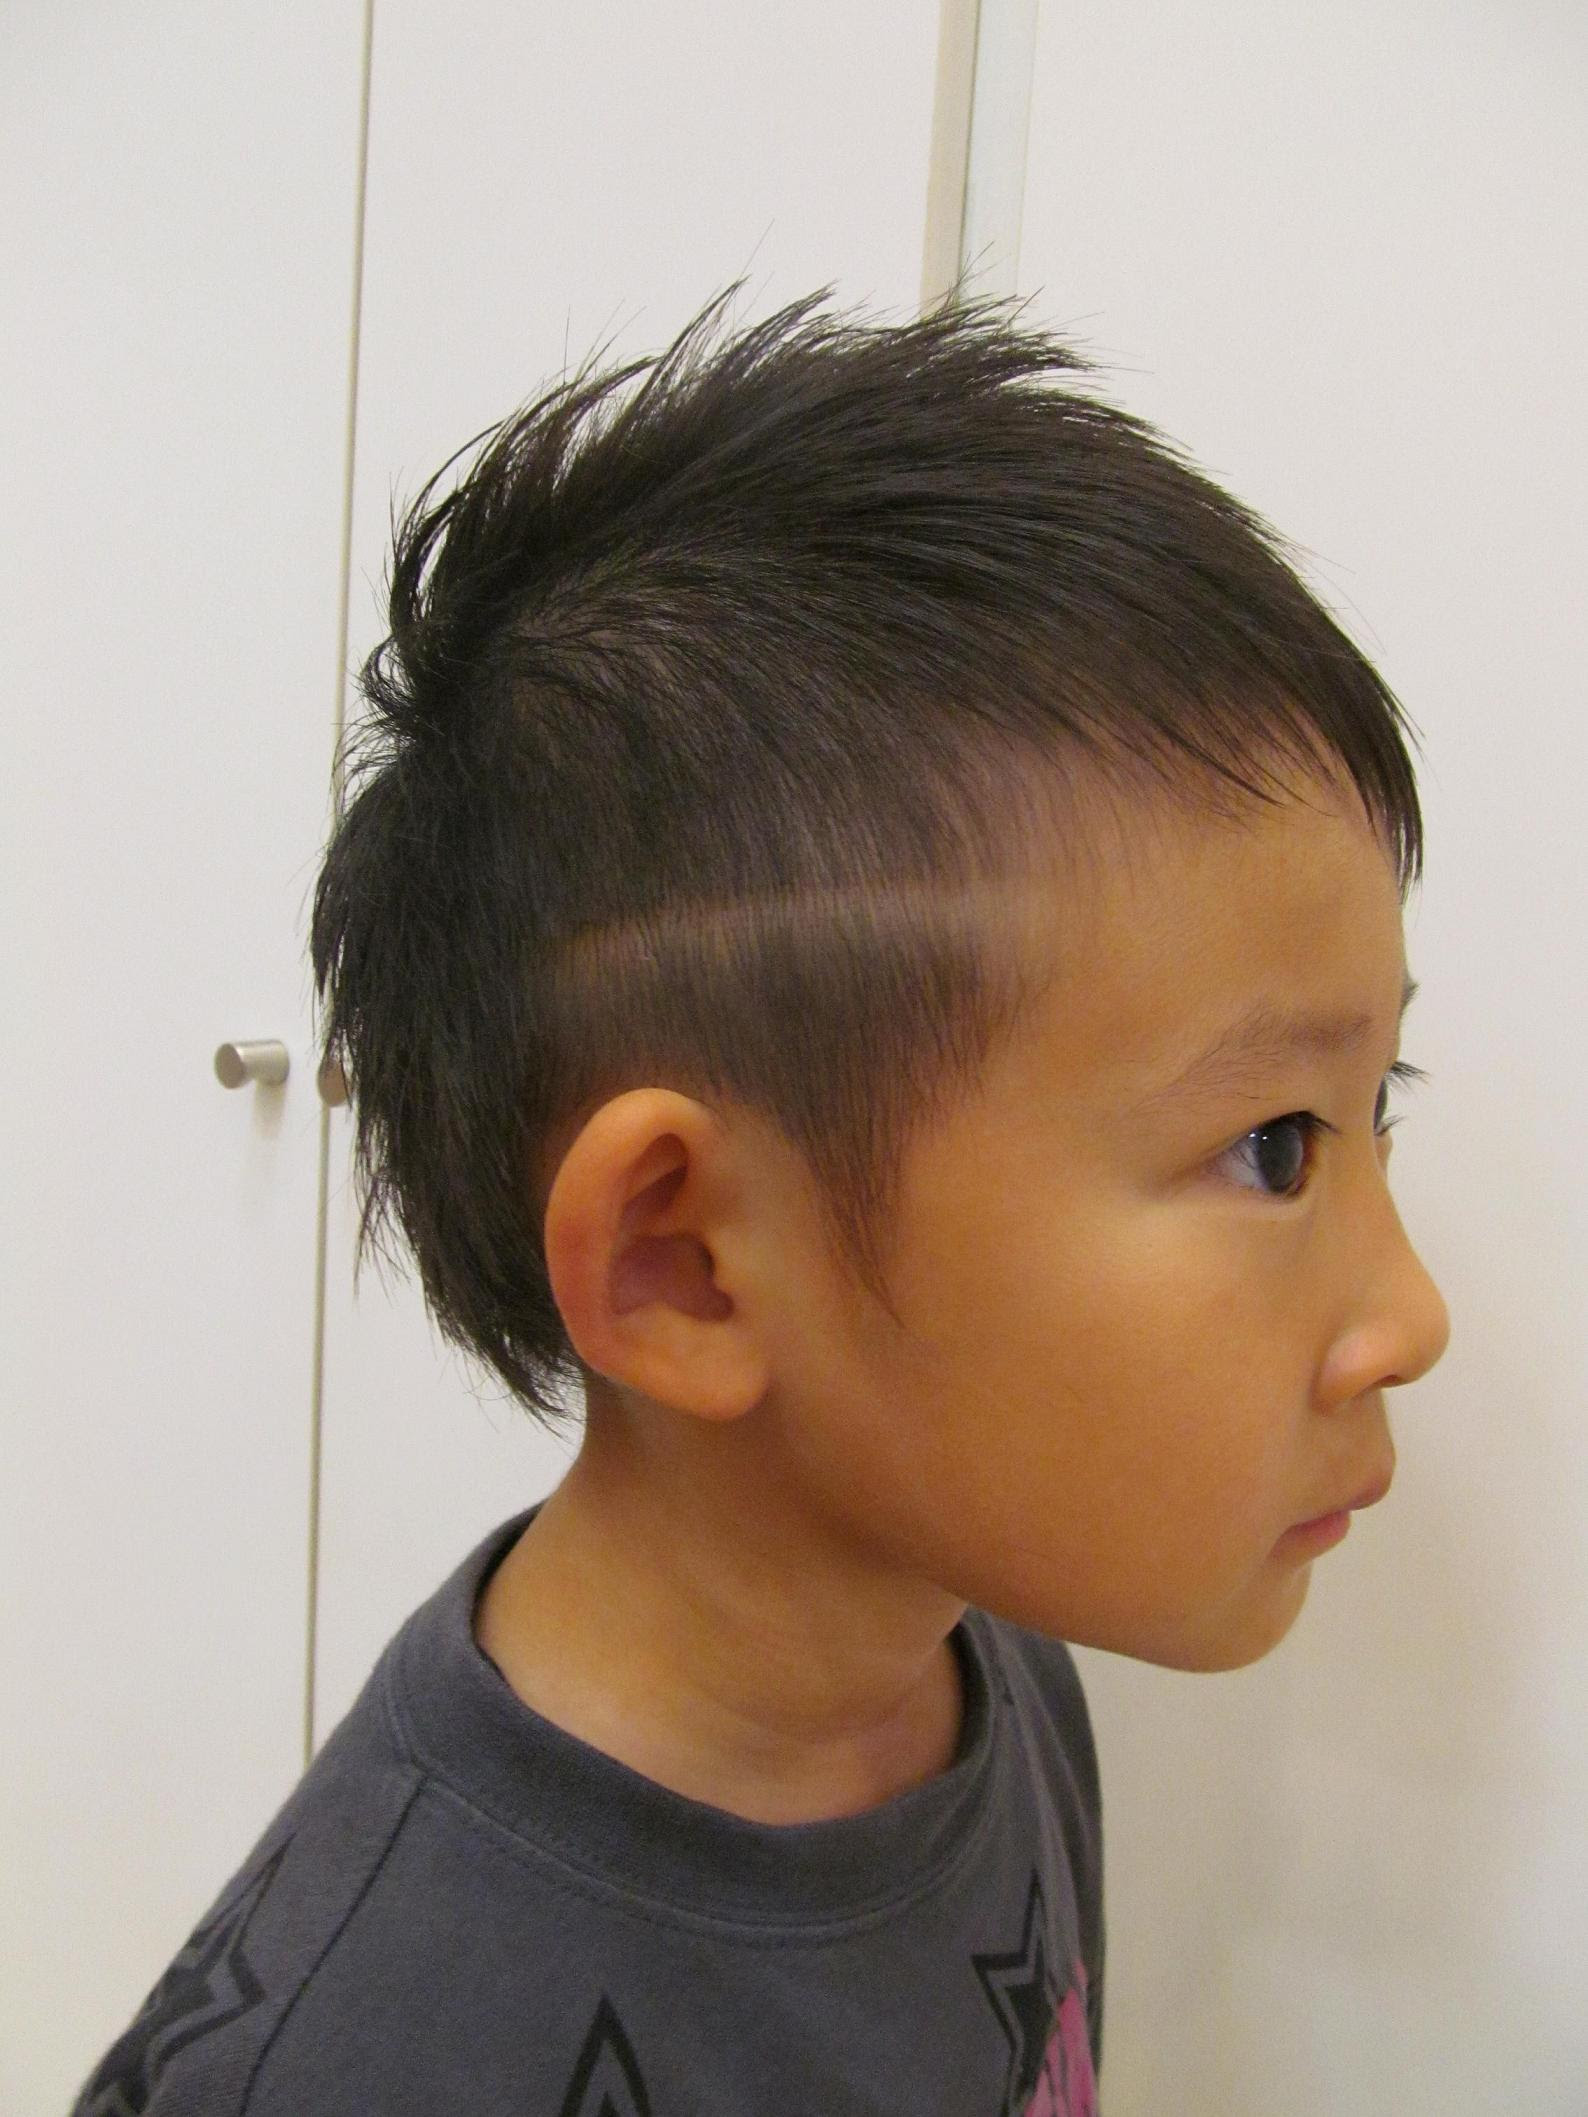 すごい 髪型 子供 ソフトモヒカン ヘアスタイルのアイデア